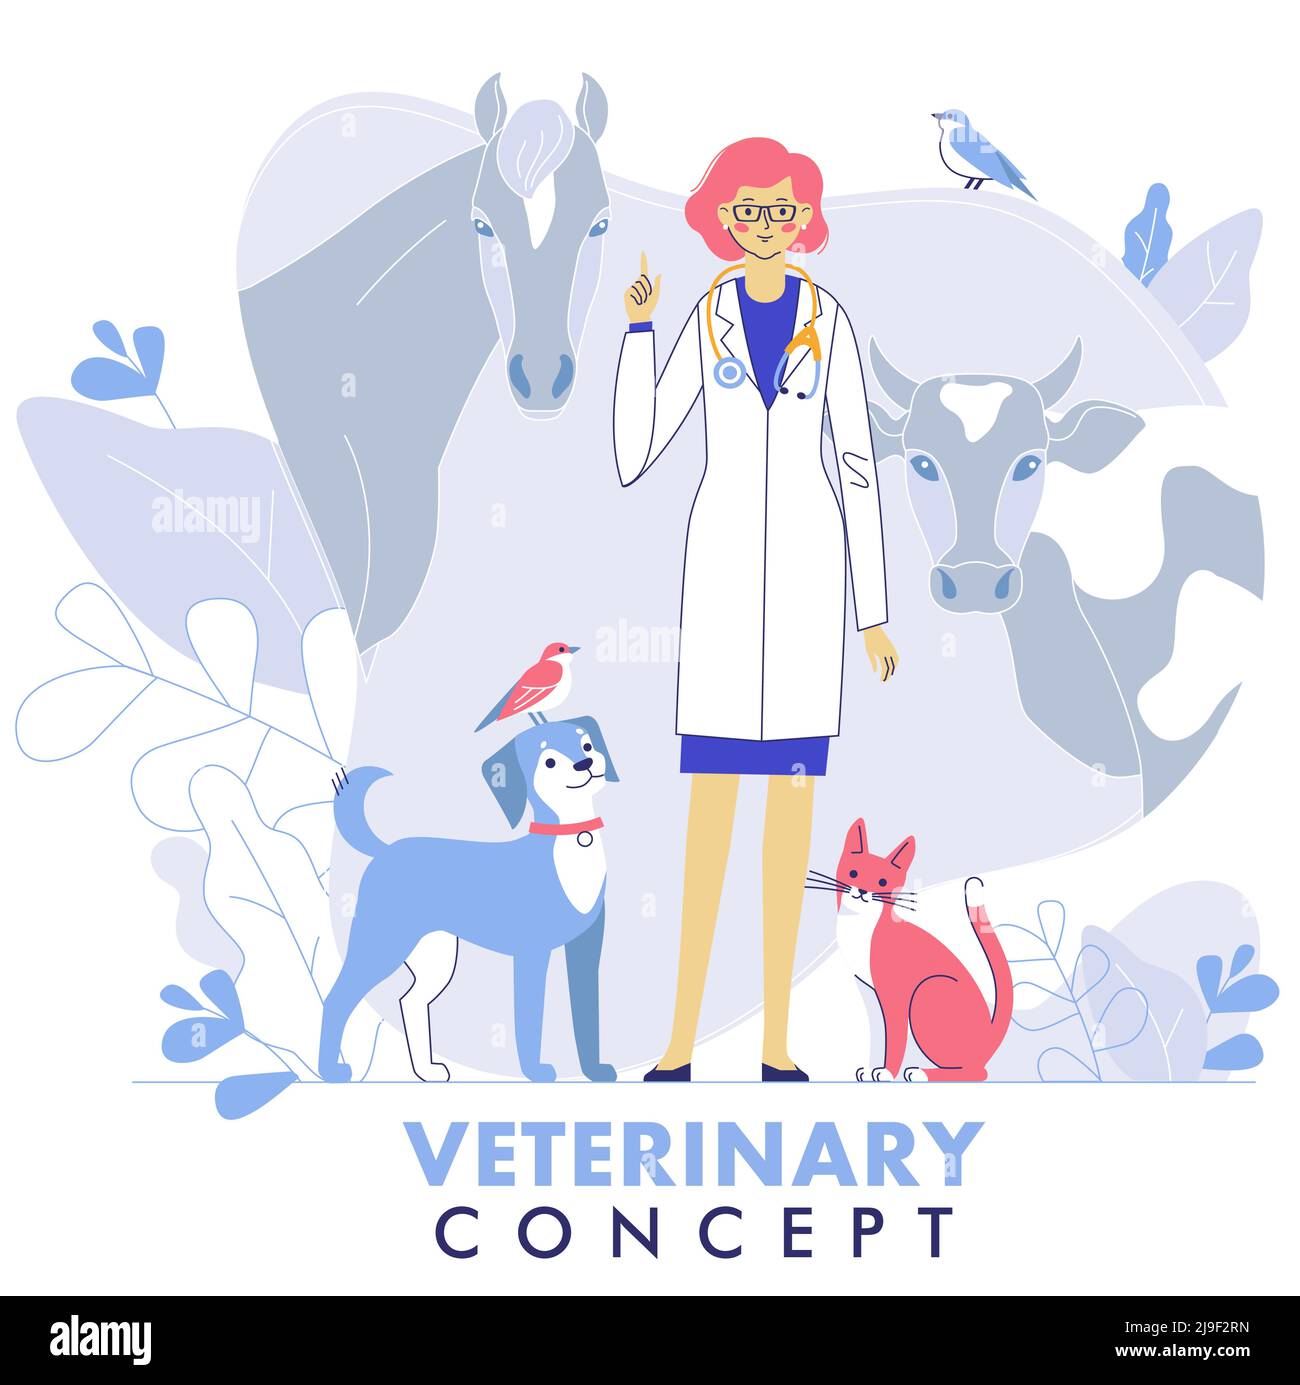 Junge Tierärztin Frau steht zusammen mit Katze, Hund, Kuh, Pferd, Vögel. Gesundheitswesen, medizinische Behandlung, Prävention und Immunisierung von Haustieren. Stock Vektor